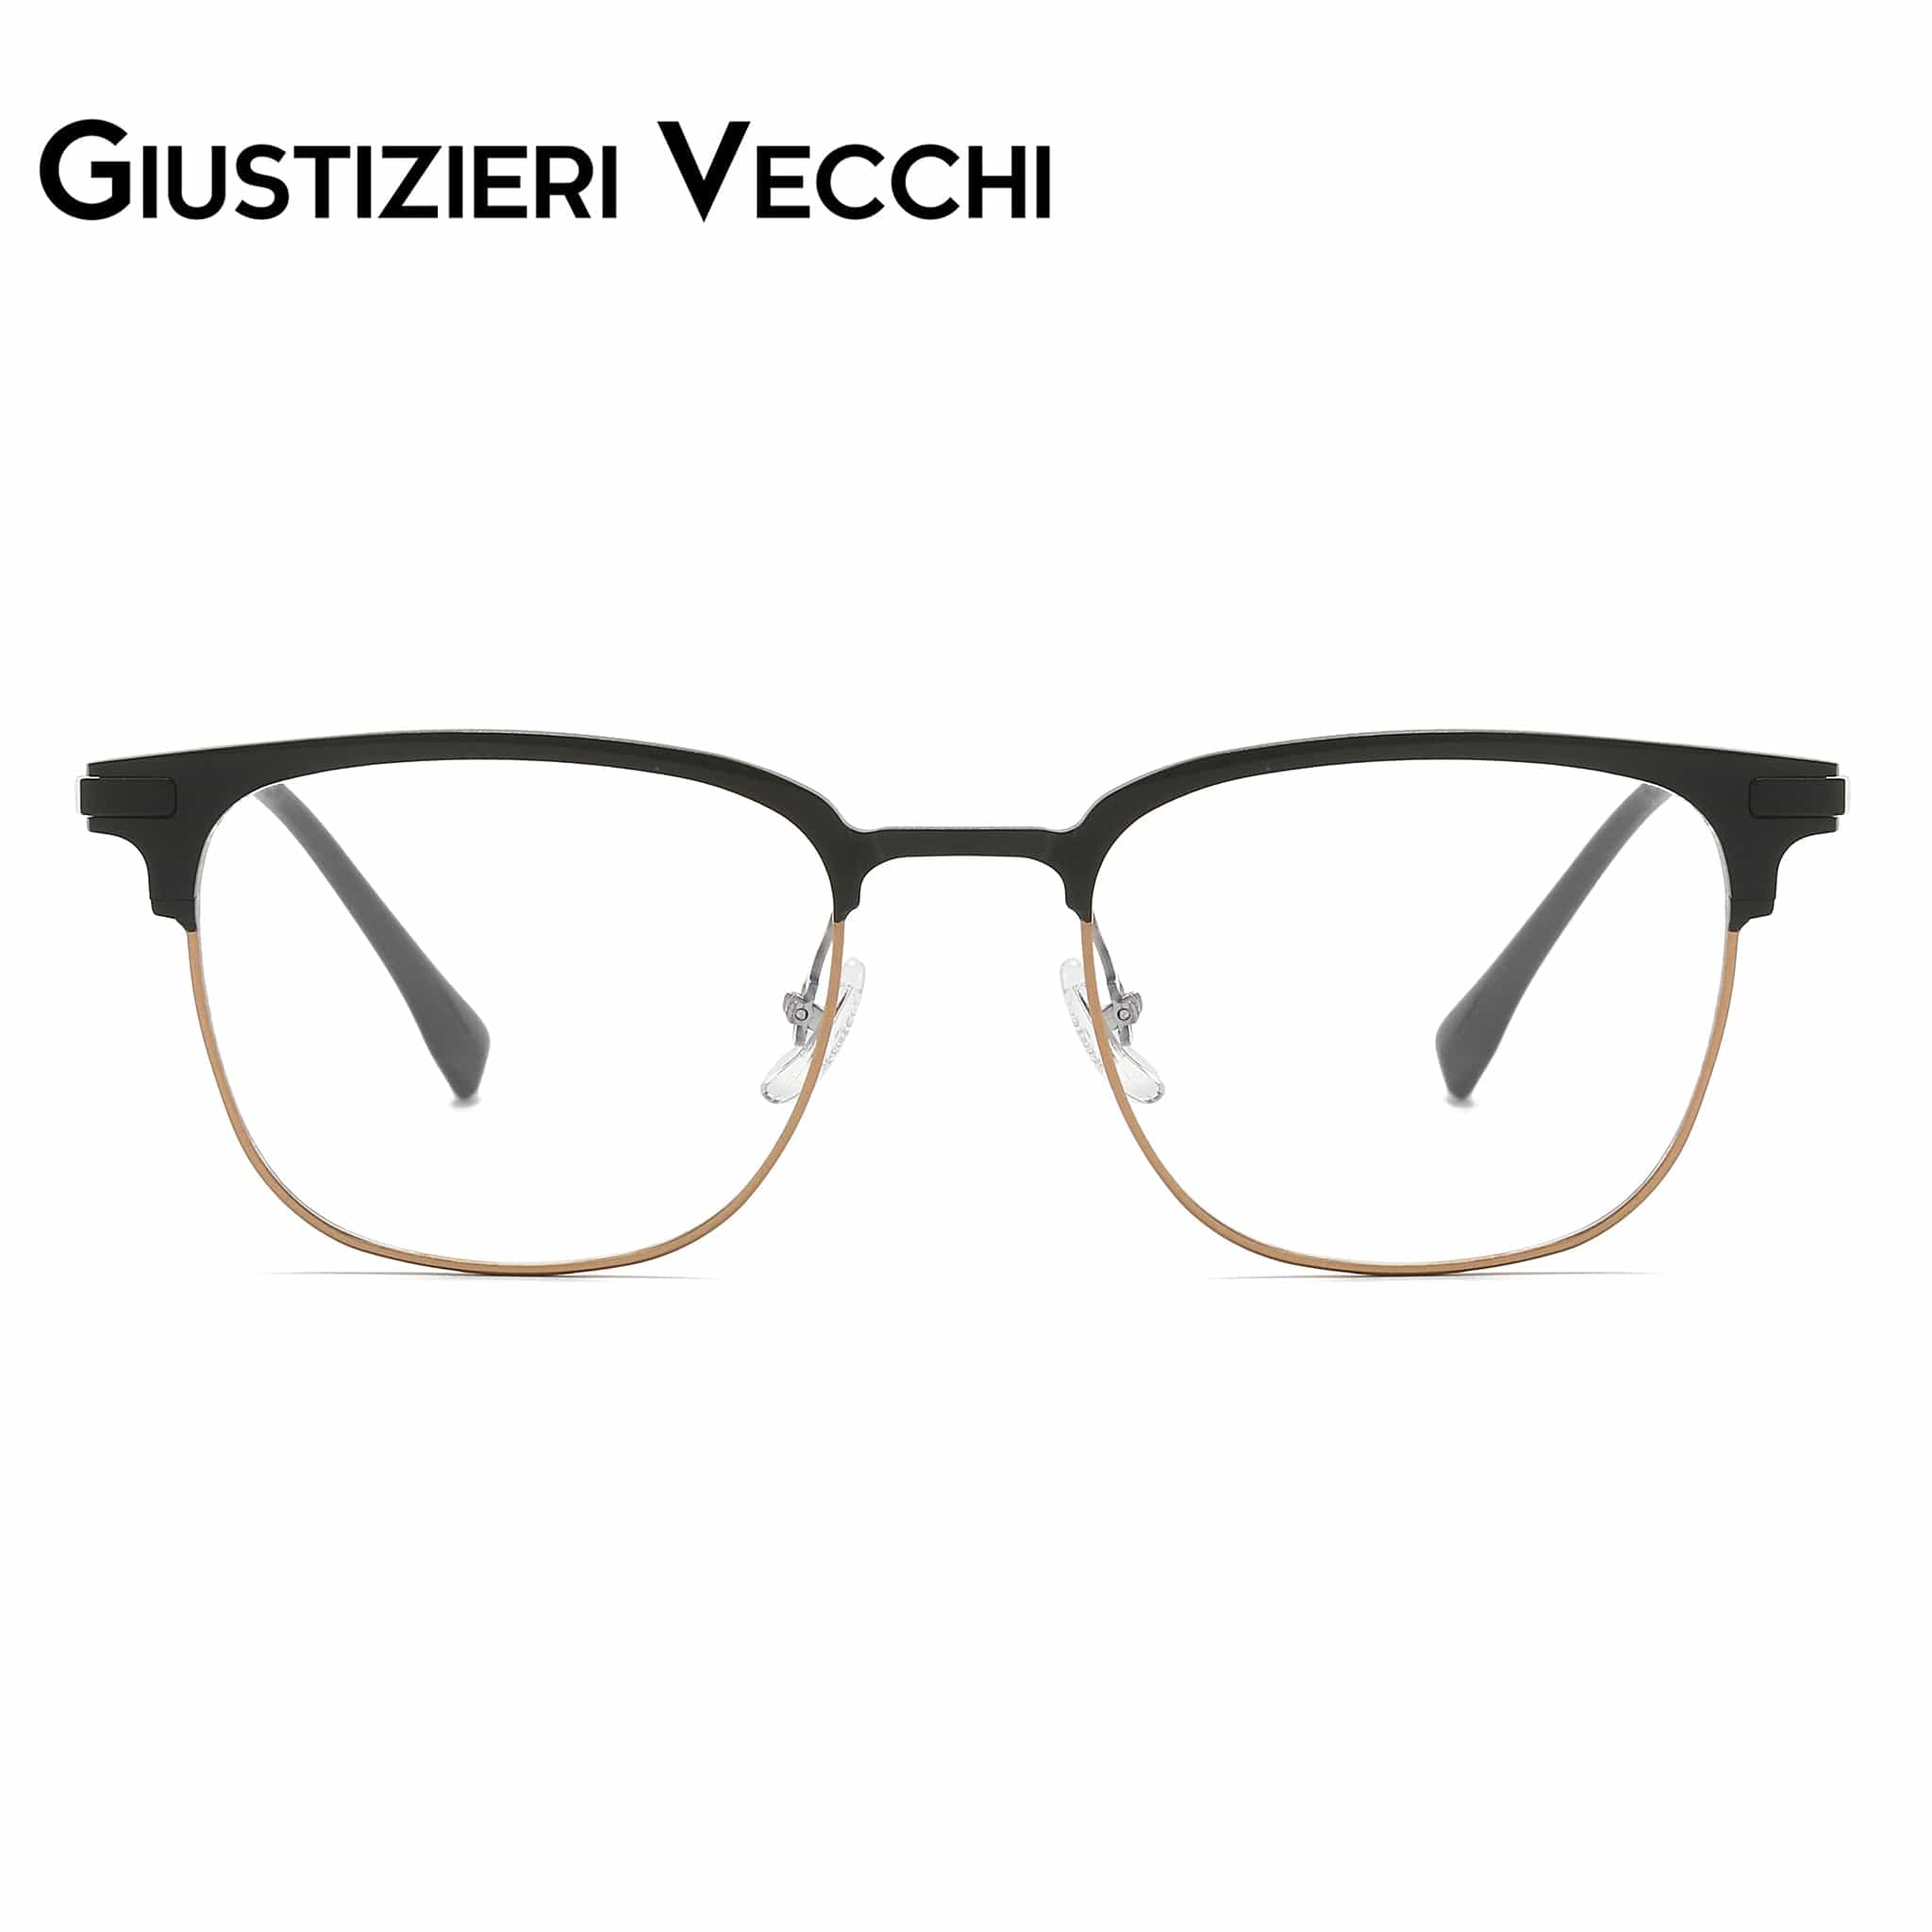 GIUSTIZIERI VECCHI Eyeglasses Small / Black with Gold FireRush Uno